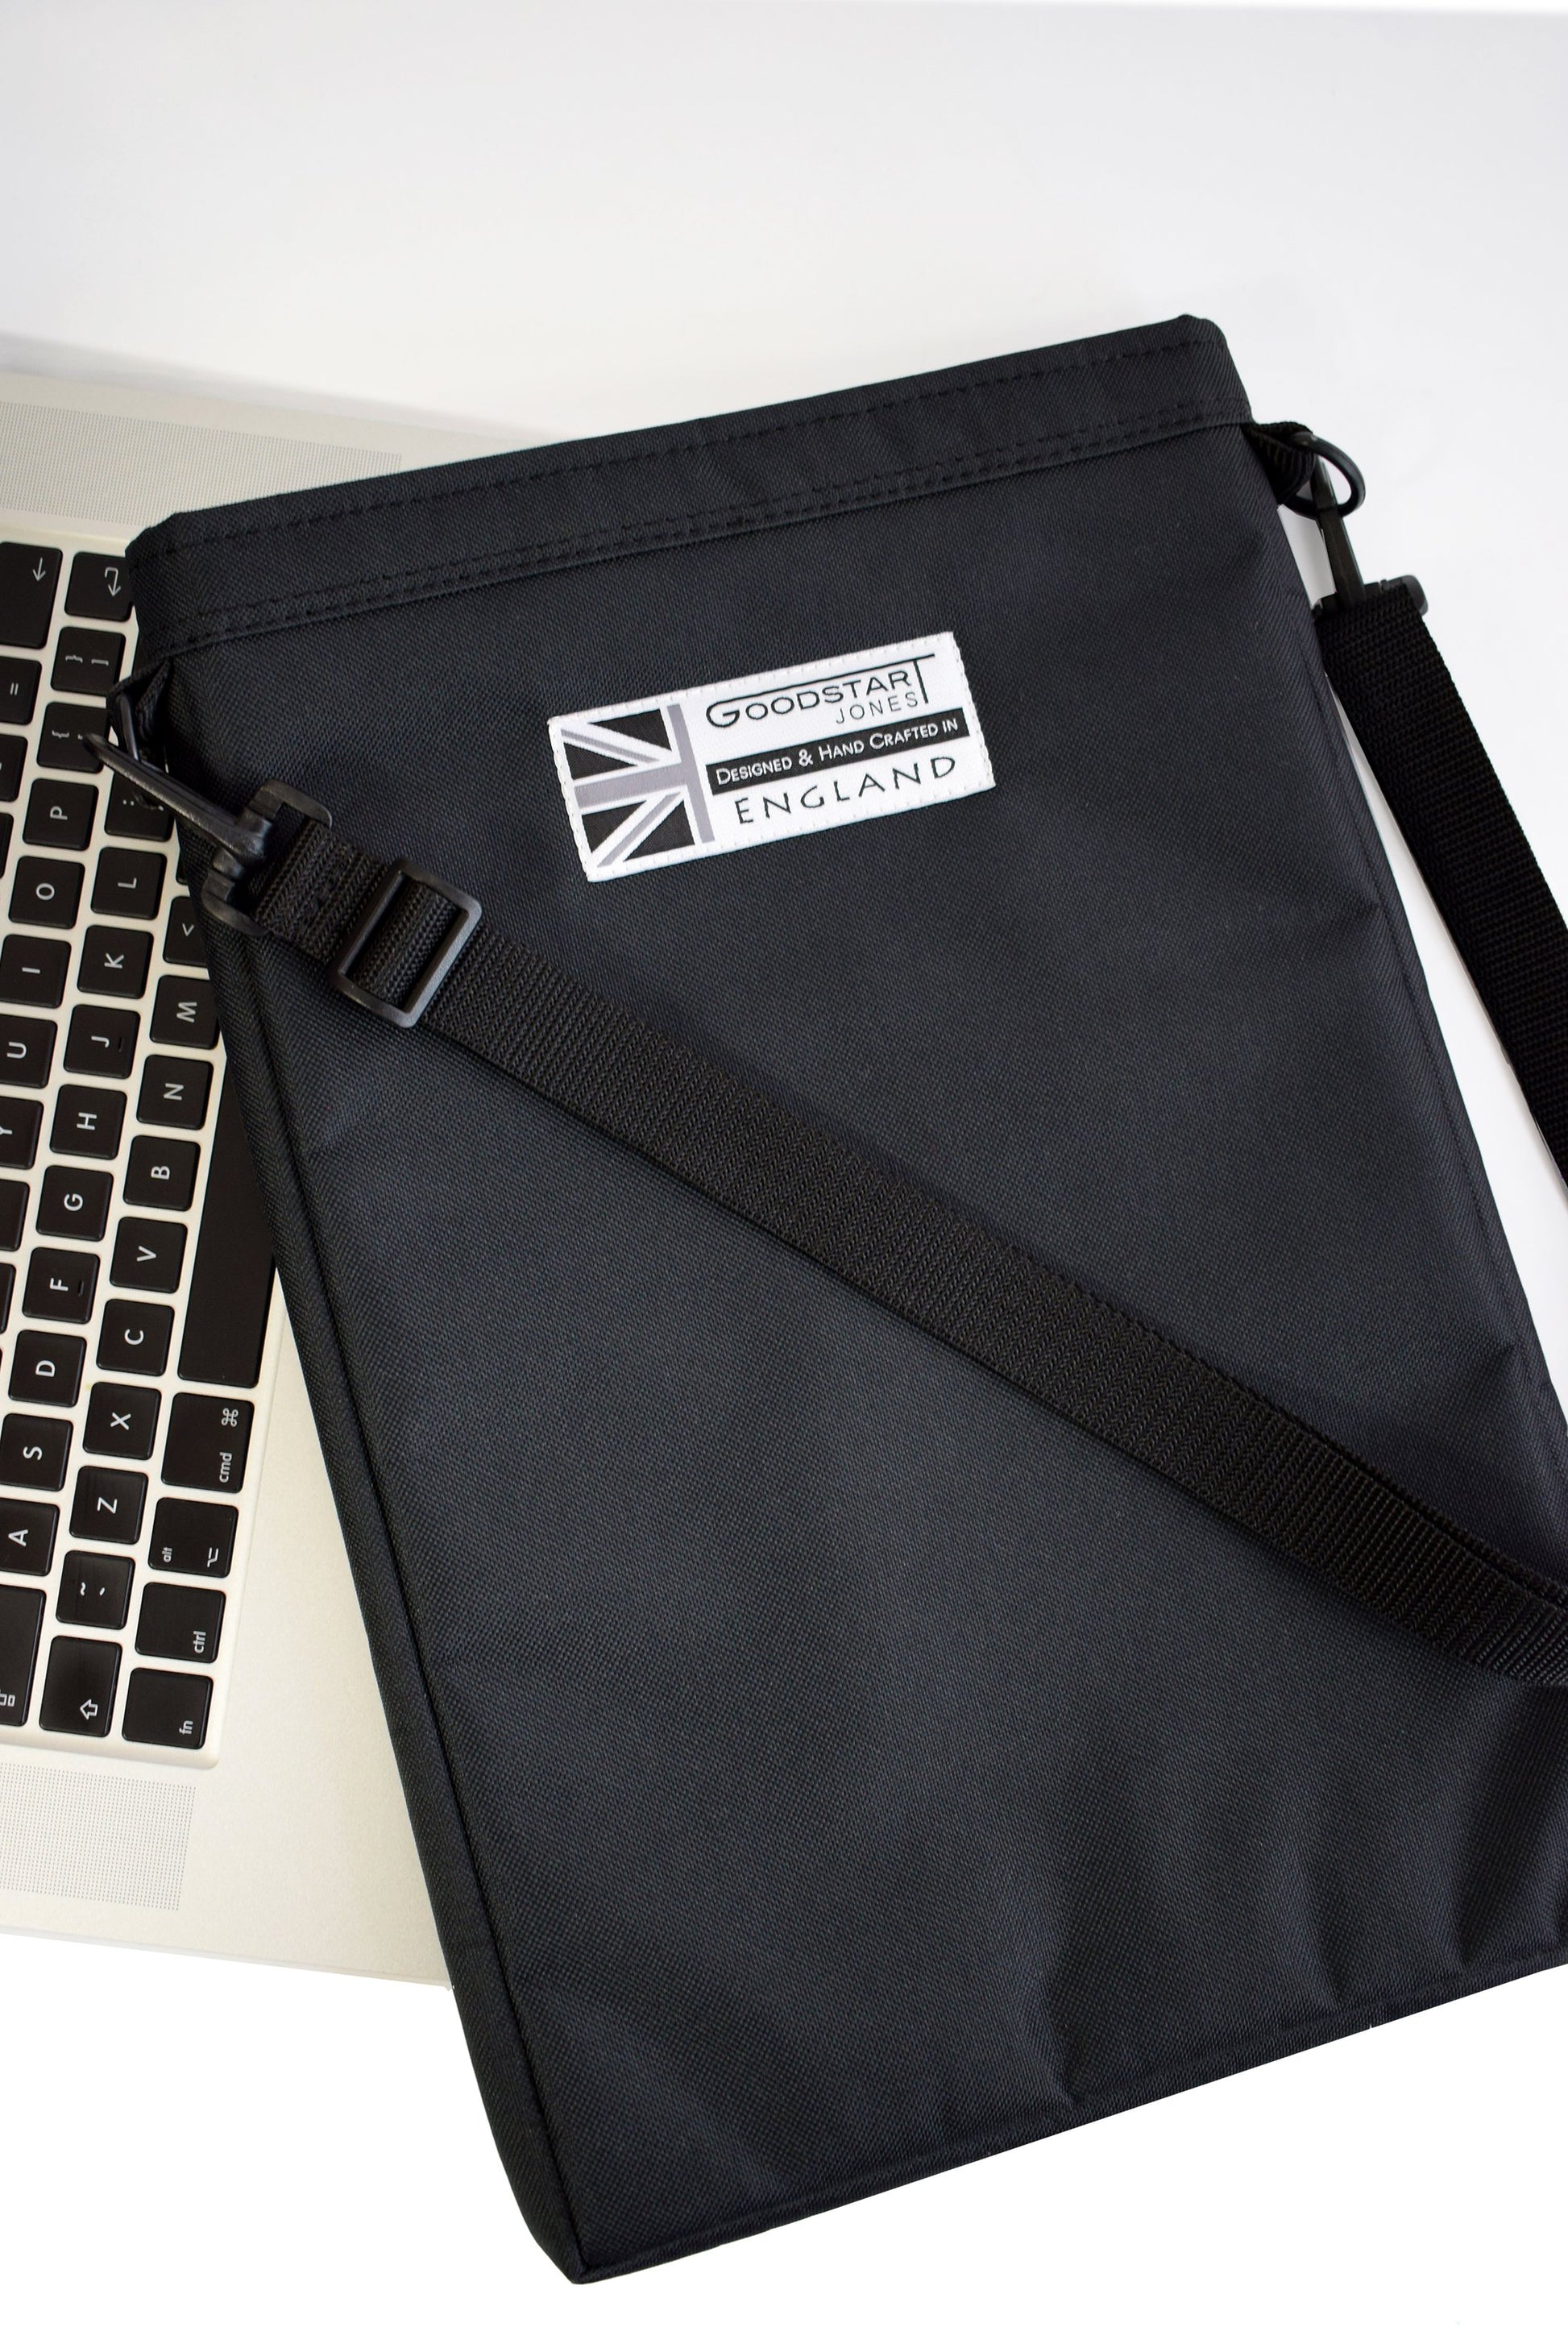 black padded laptop sleeve by Goodstart Jones 